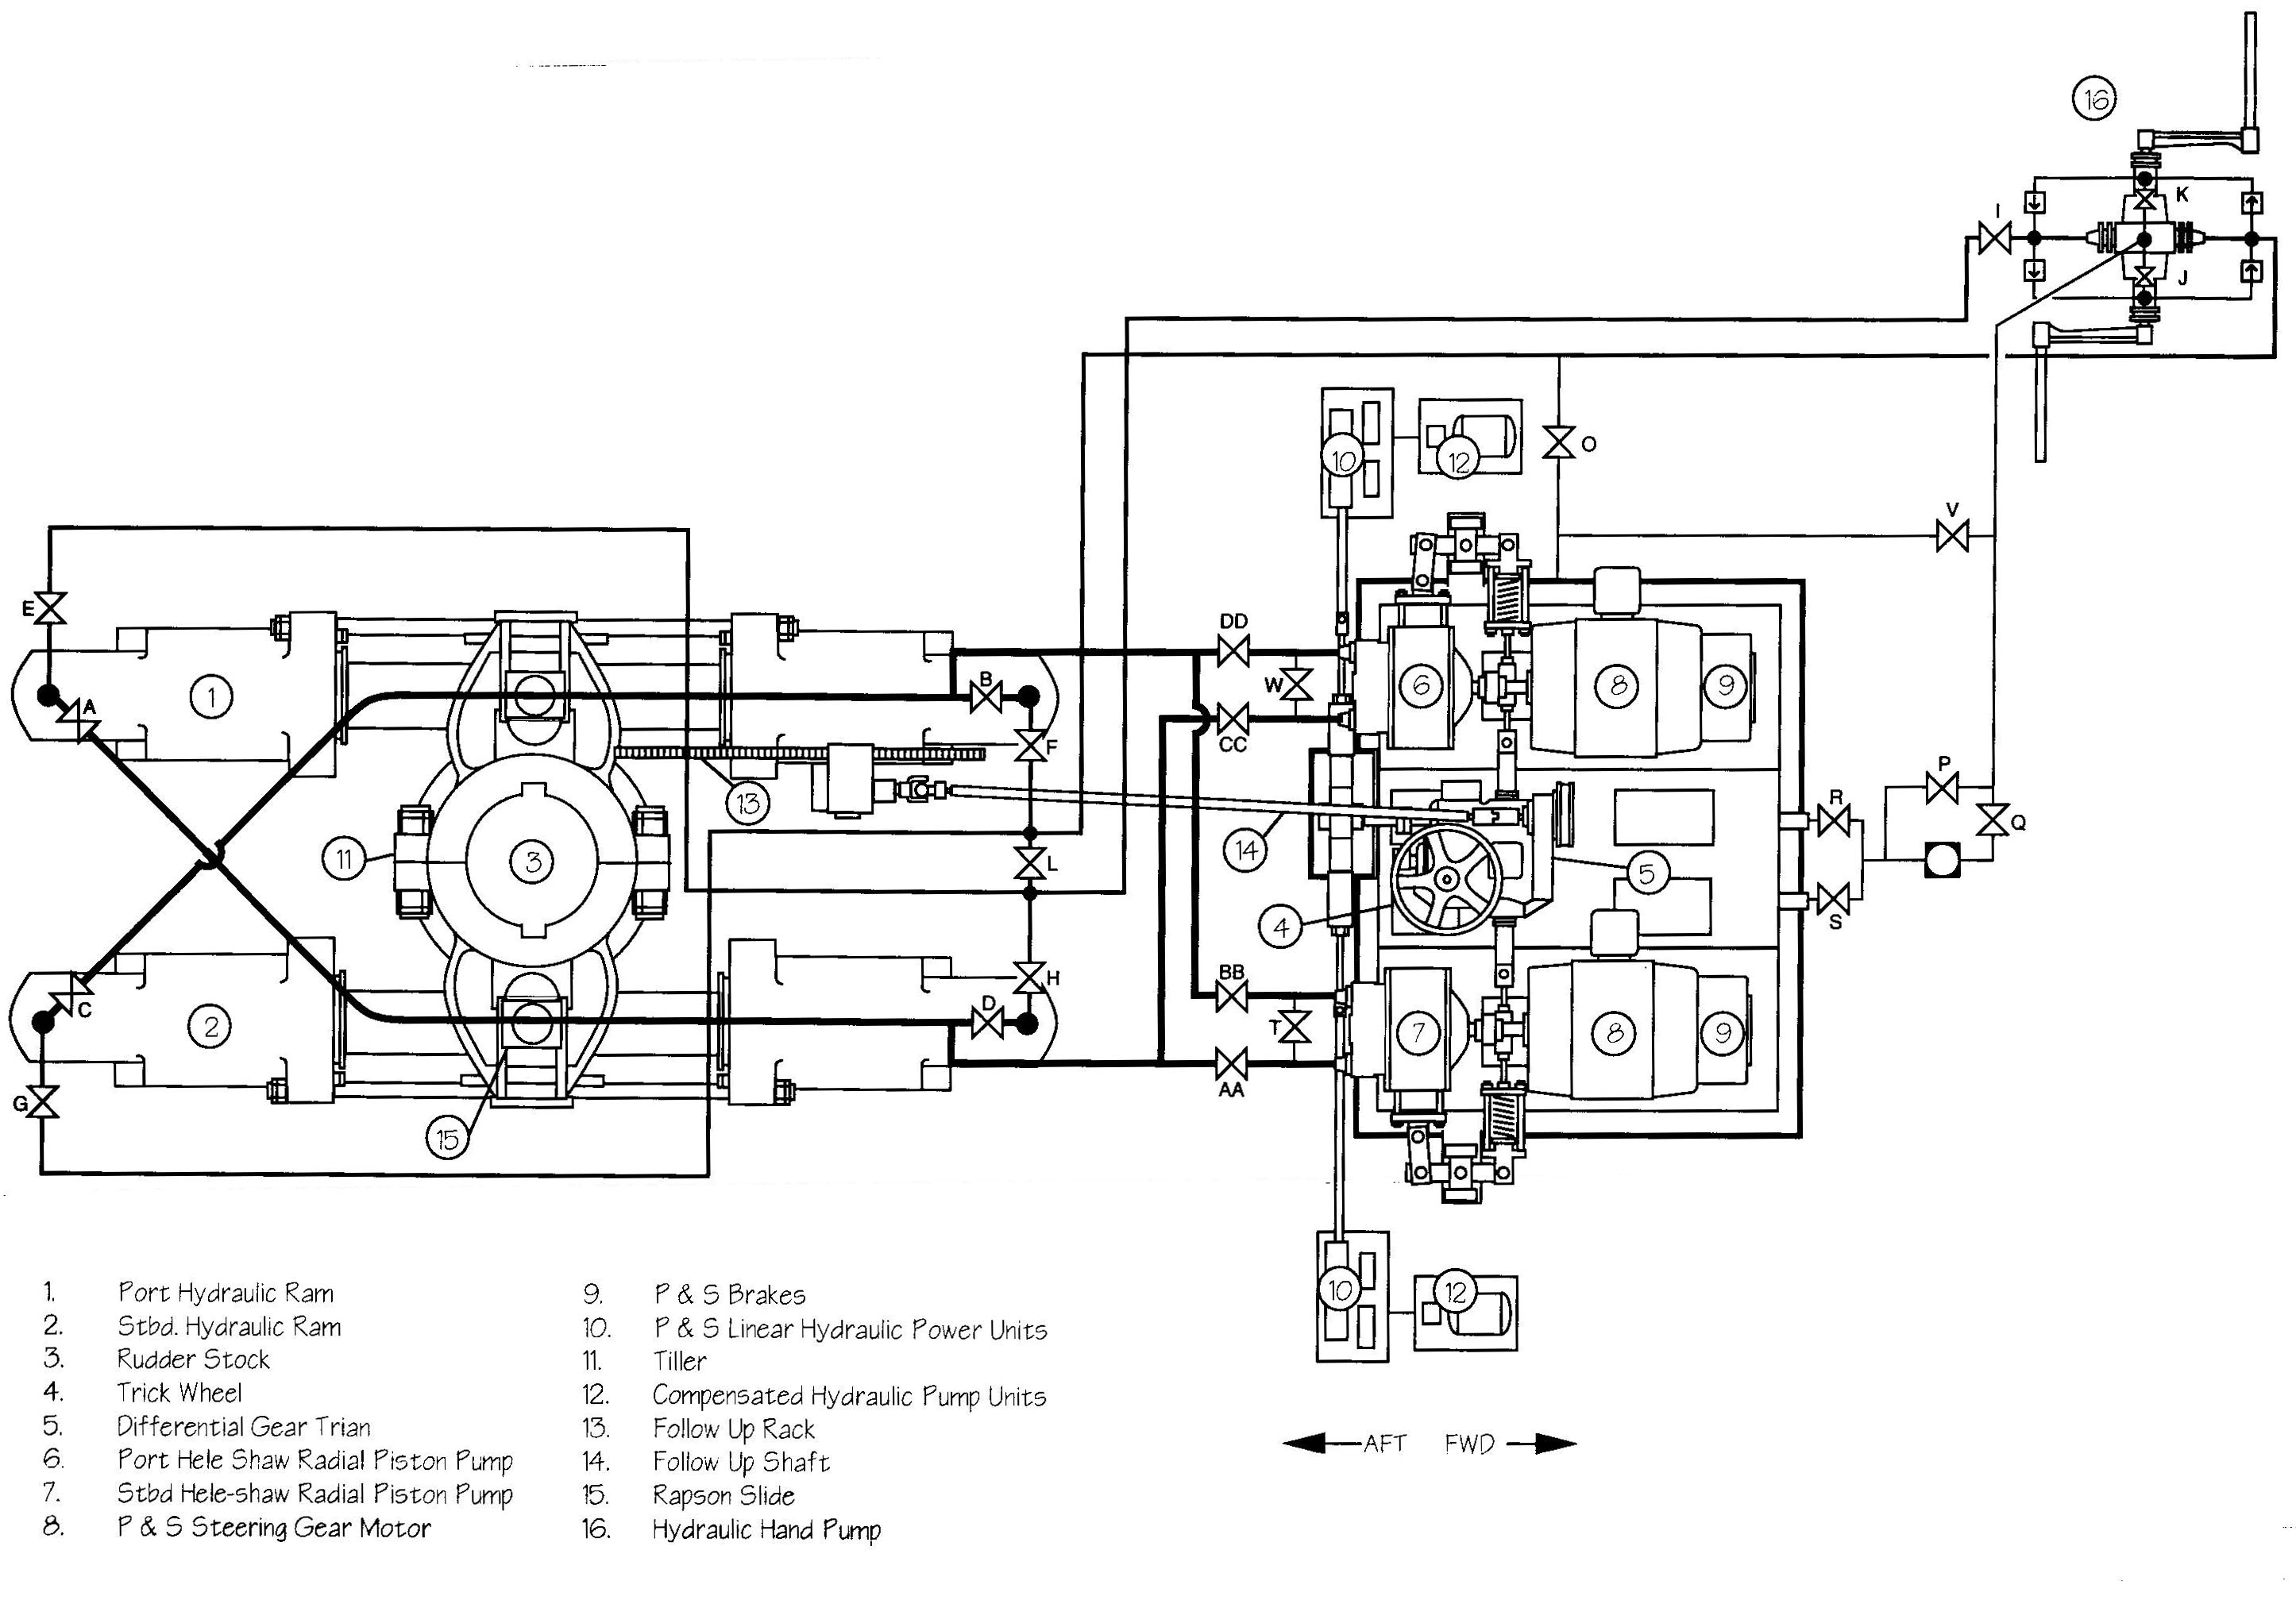 Durco pump engineering manual